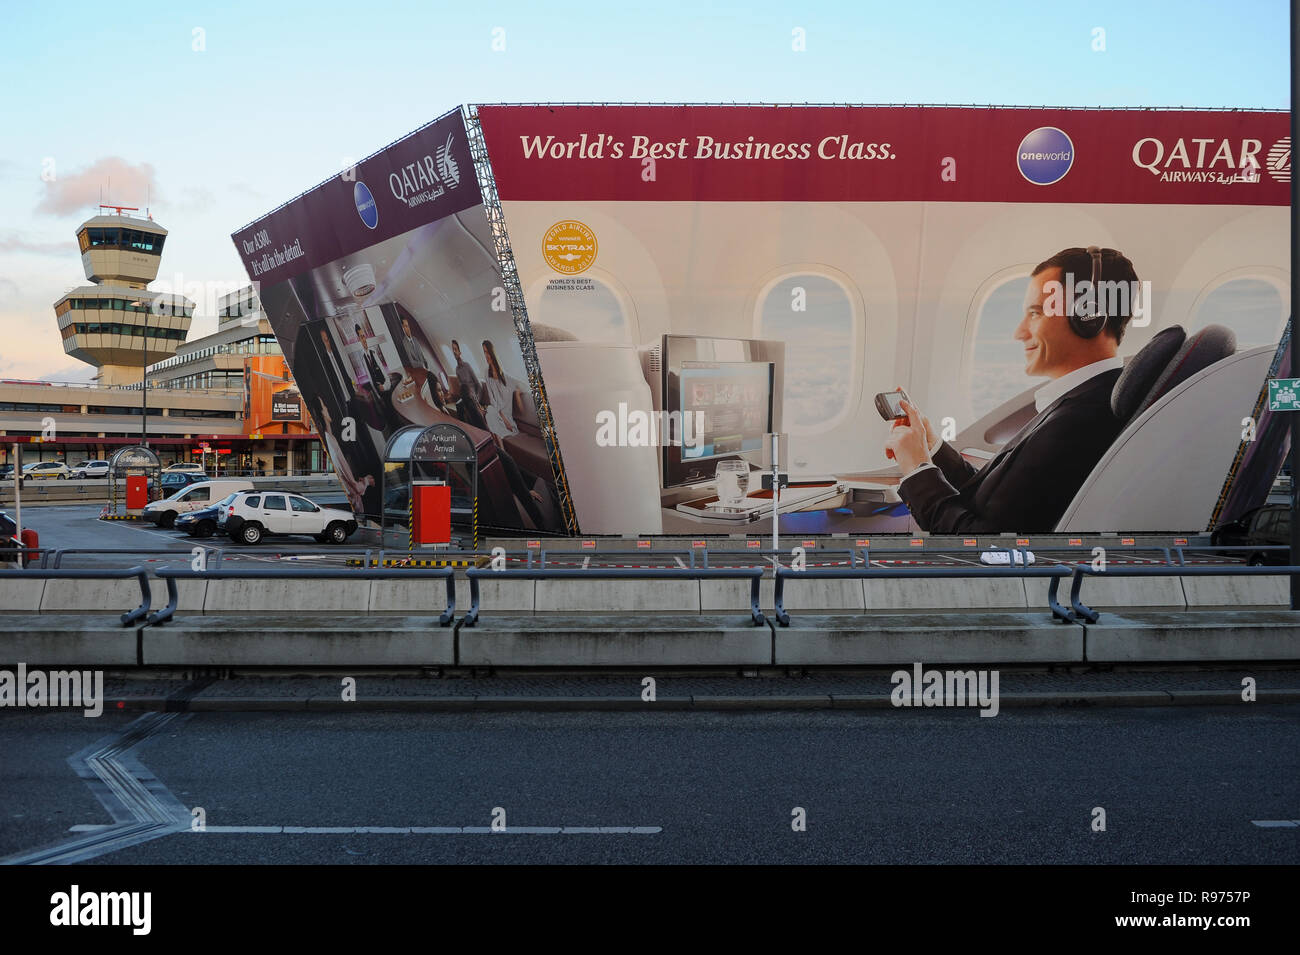 30.03.2015, Berlino, Germania, Europa - cartelloni pubblicitari per la business class della Qatar Airways presso l'aeroporto di Tegel. Foto Stock